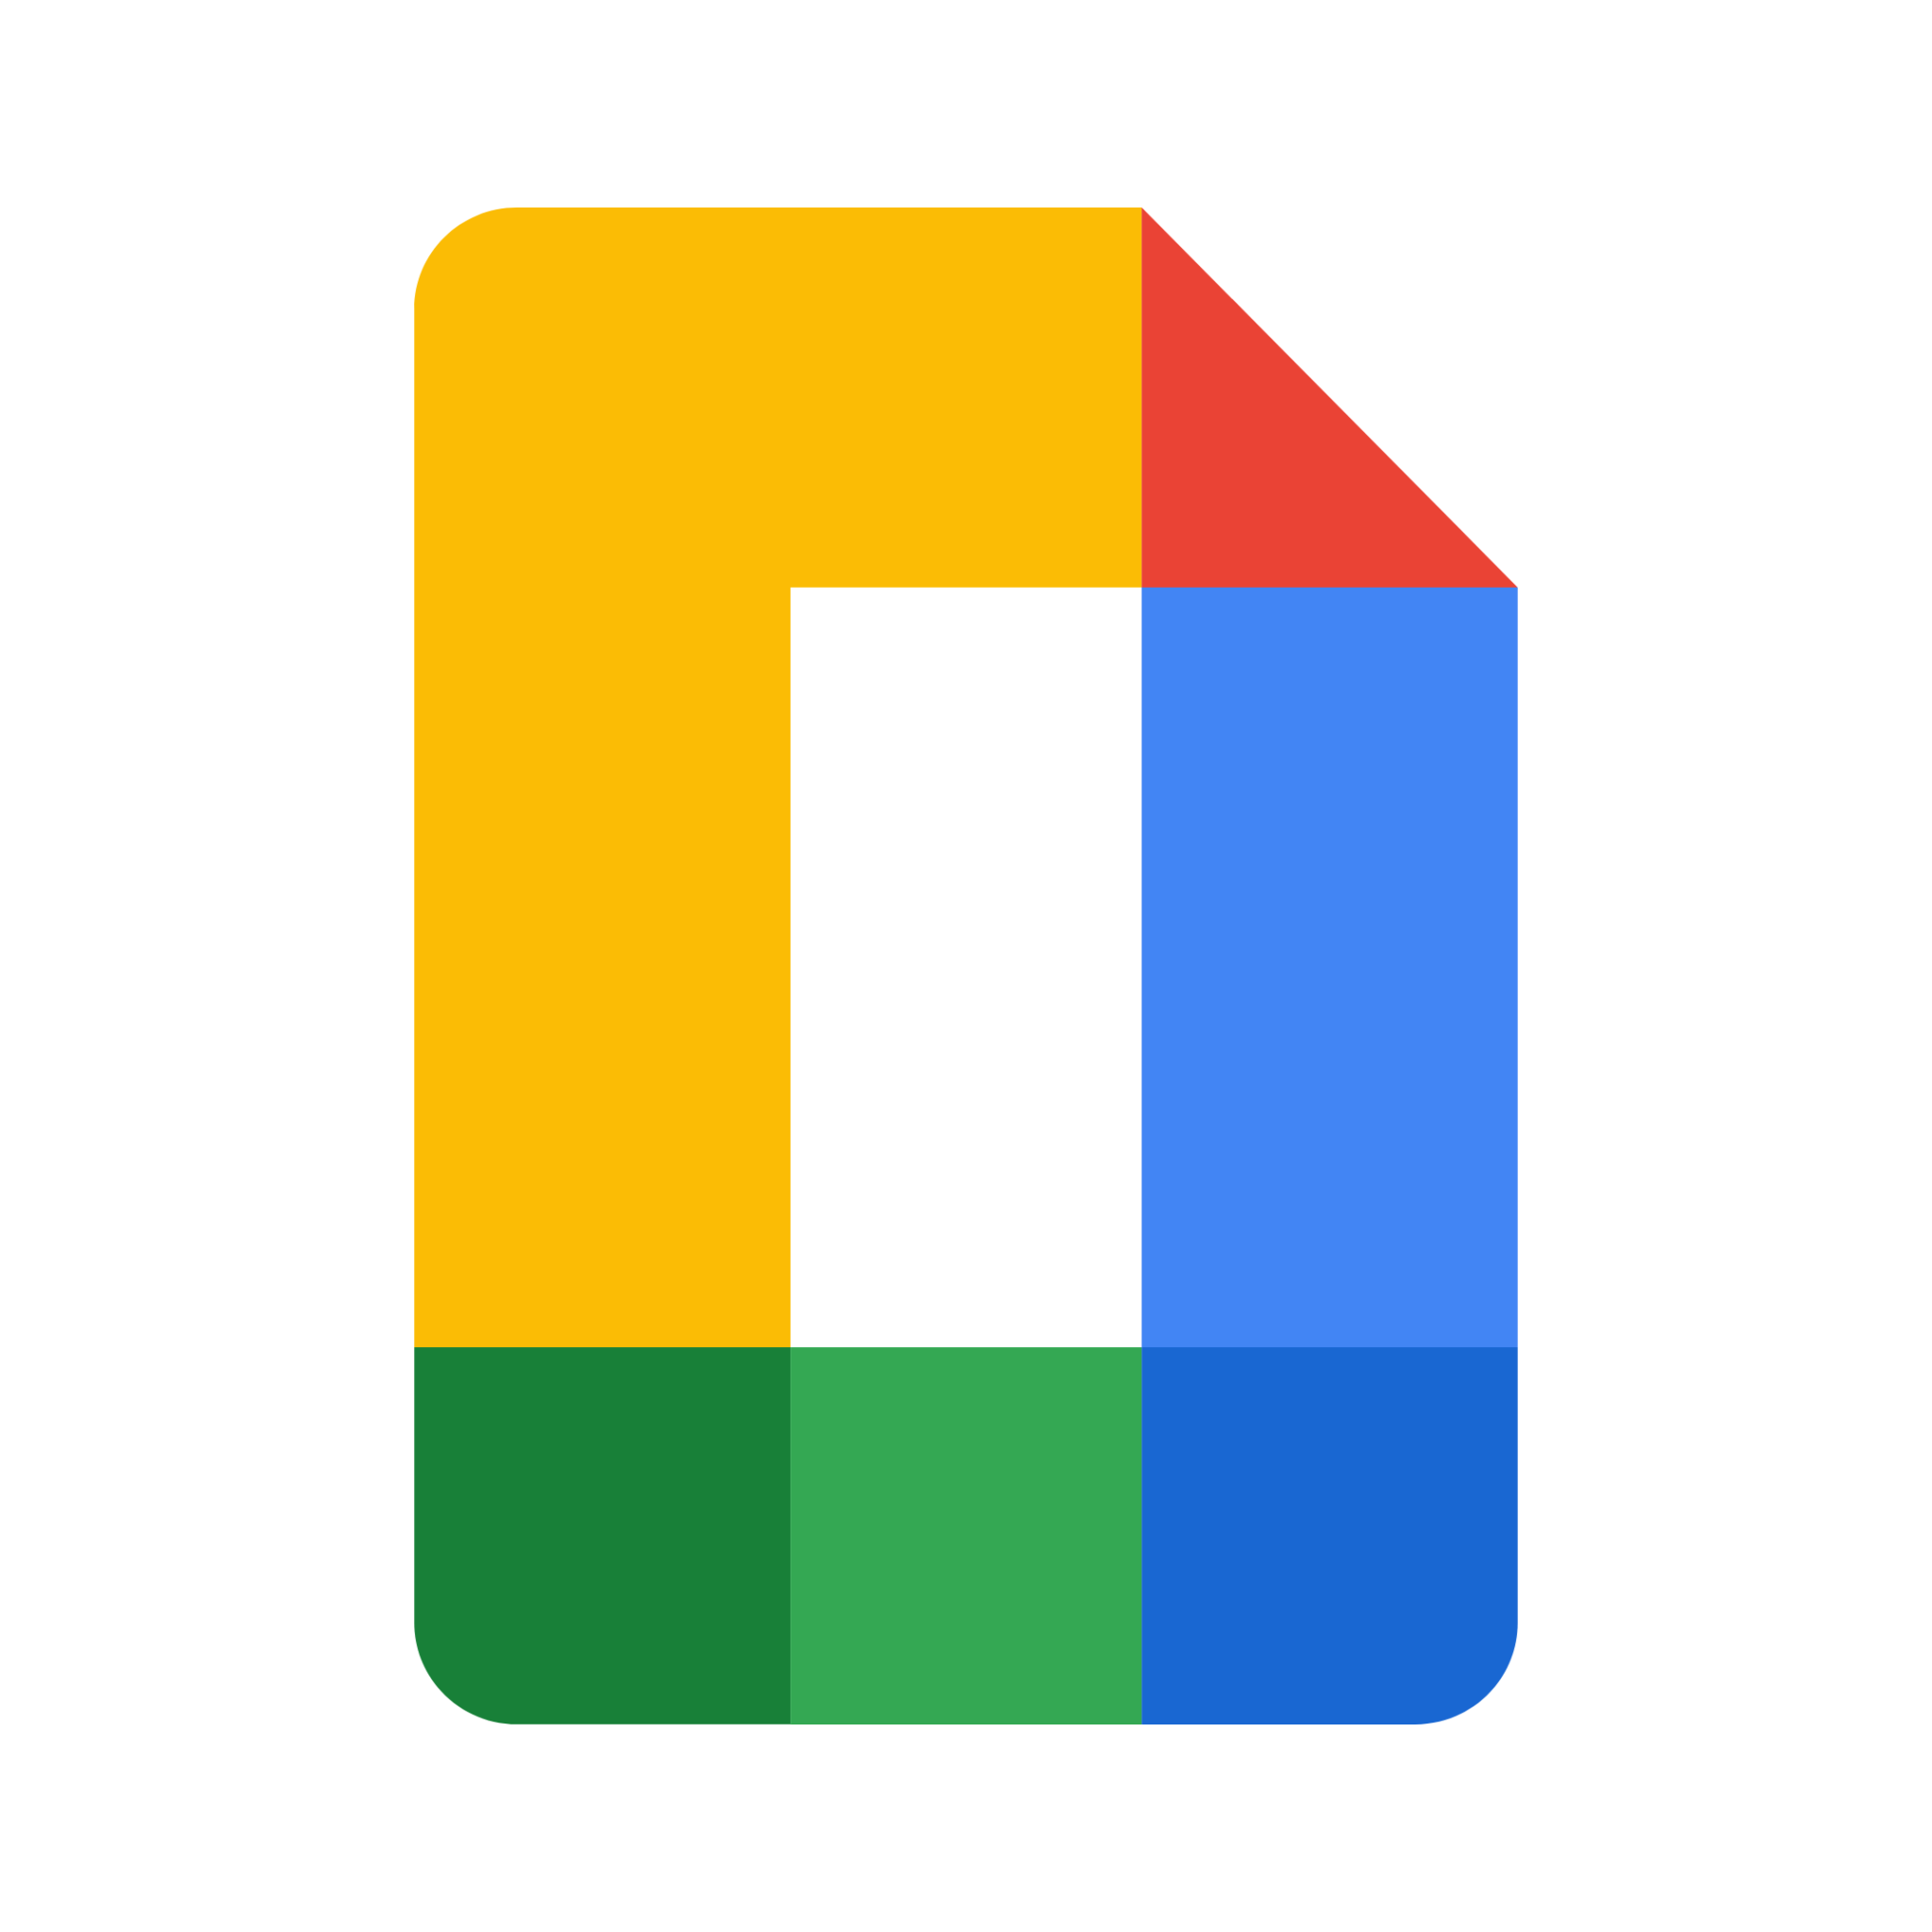 google docs icon